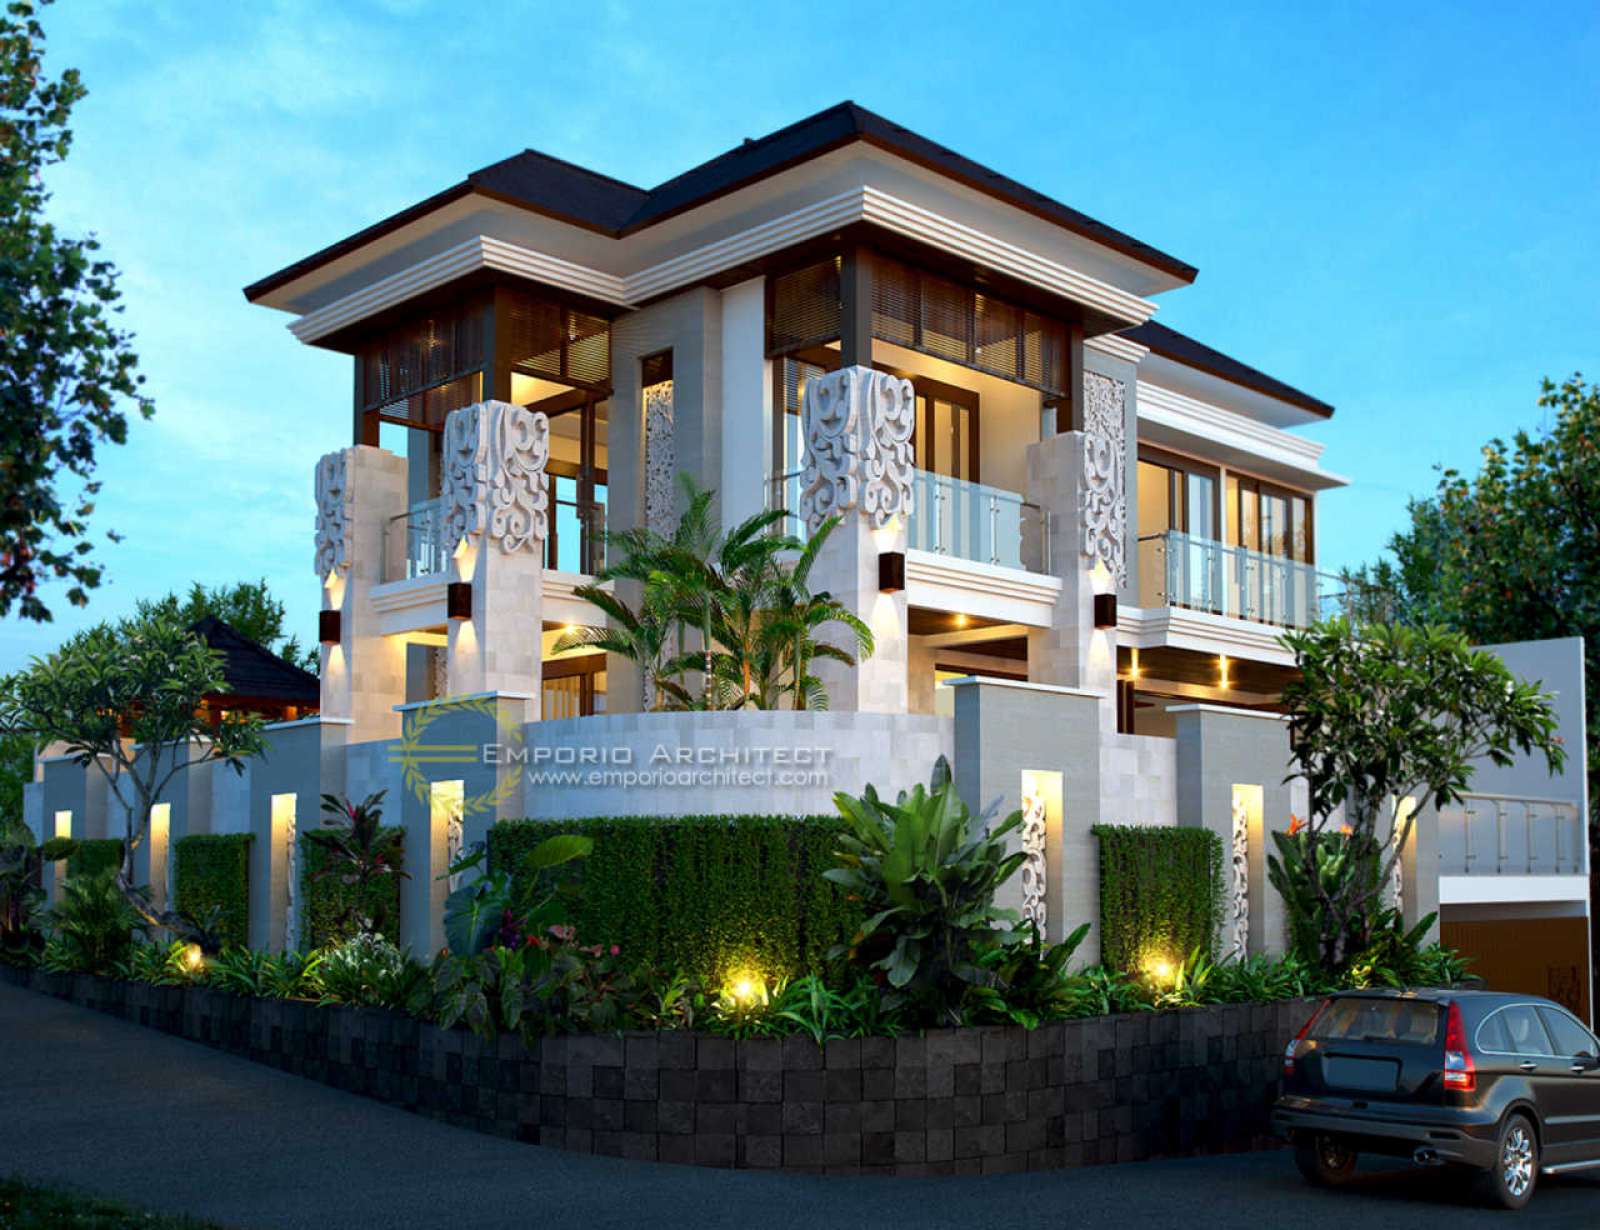 Desain Rumah Nuansa Bali / 7 Daftar Desain Rumah Villa Bali Modern Yg Paling Modern ... - Jika anda menginginkan rumah bali yang kental dengan nuansa hindu, anda bisa menambahkan unsur patung tersebut ke dalam desain rumah seperti contoh desain.